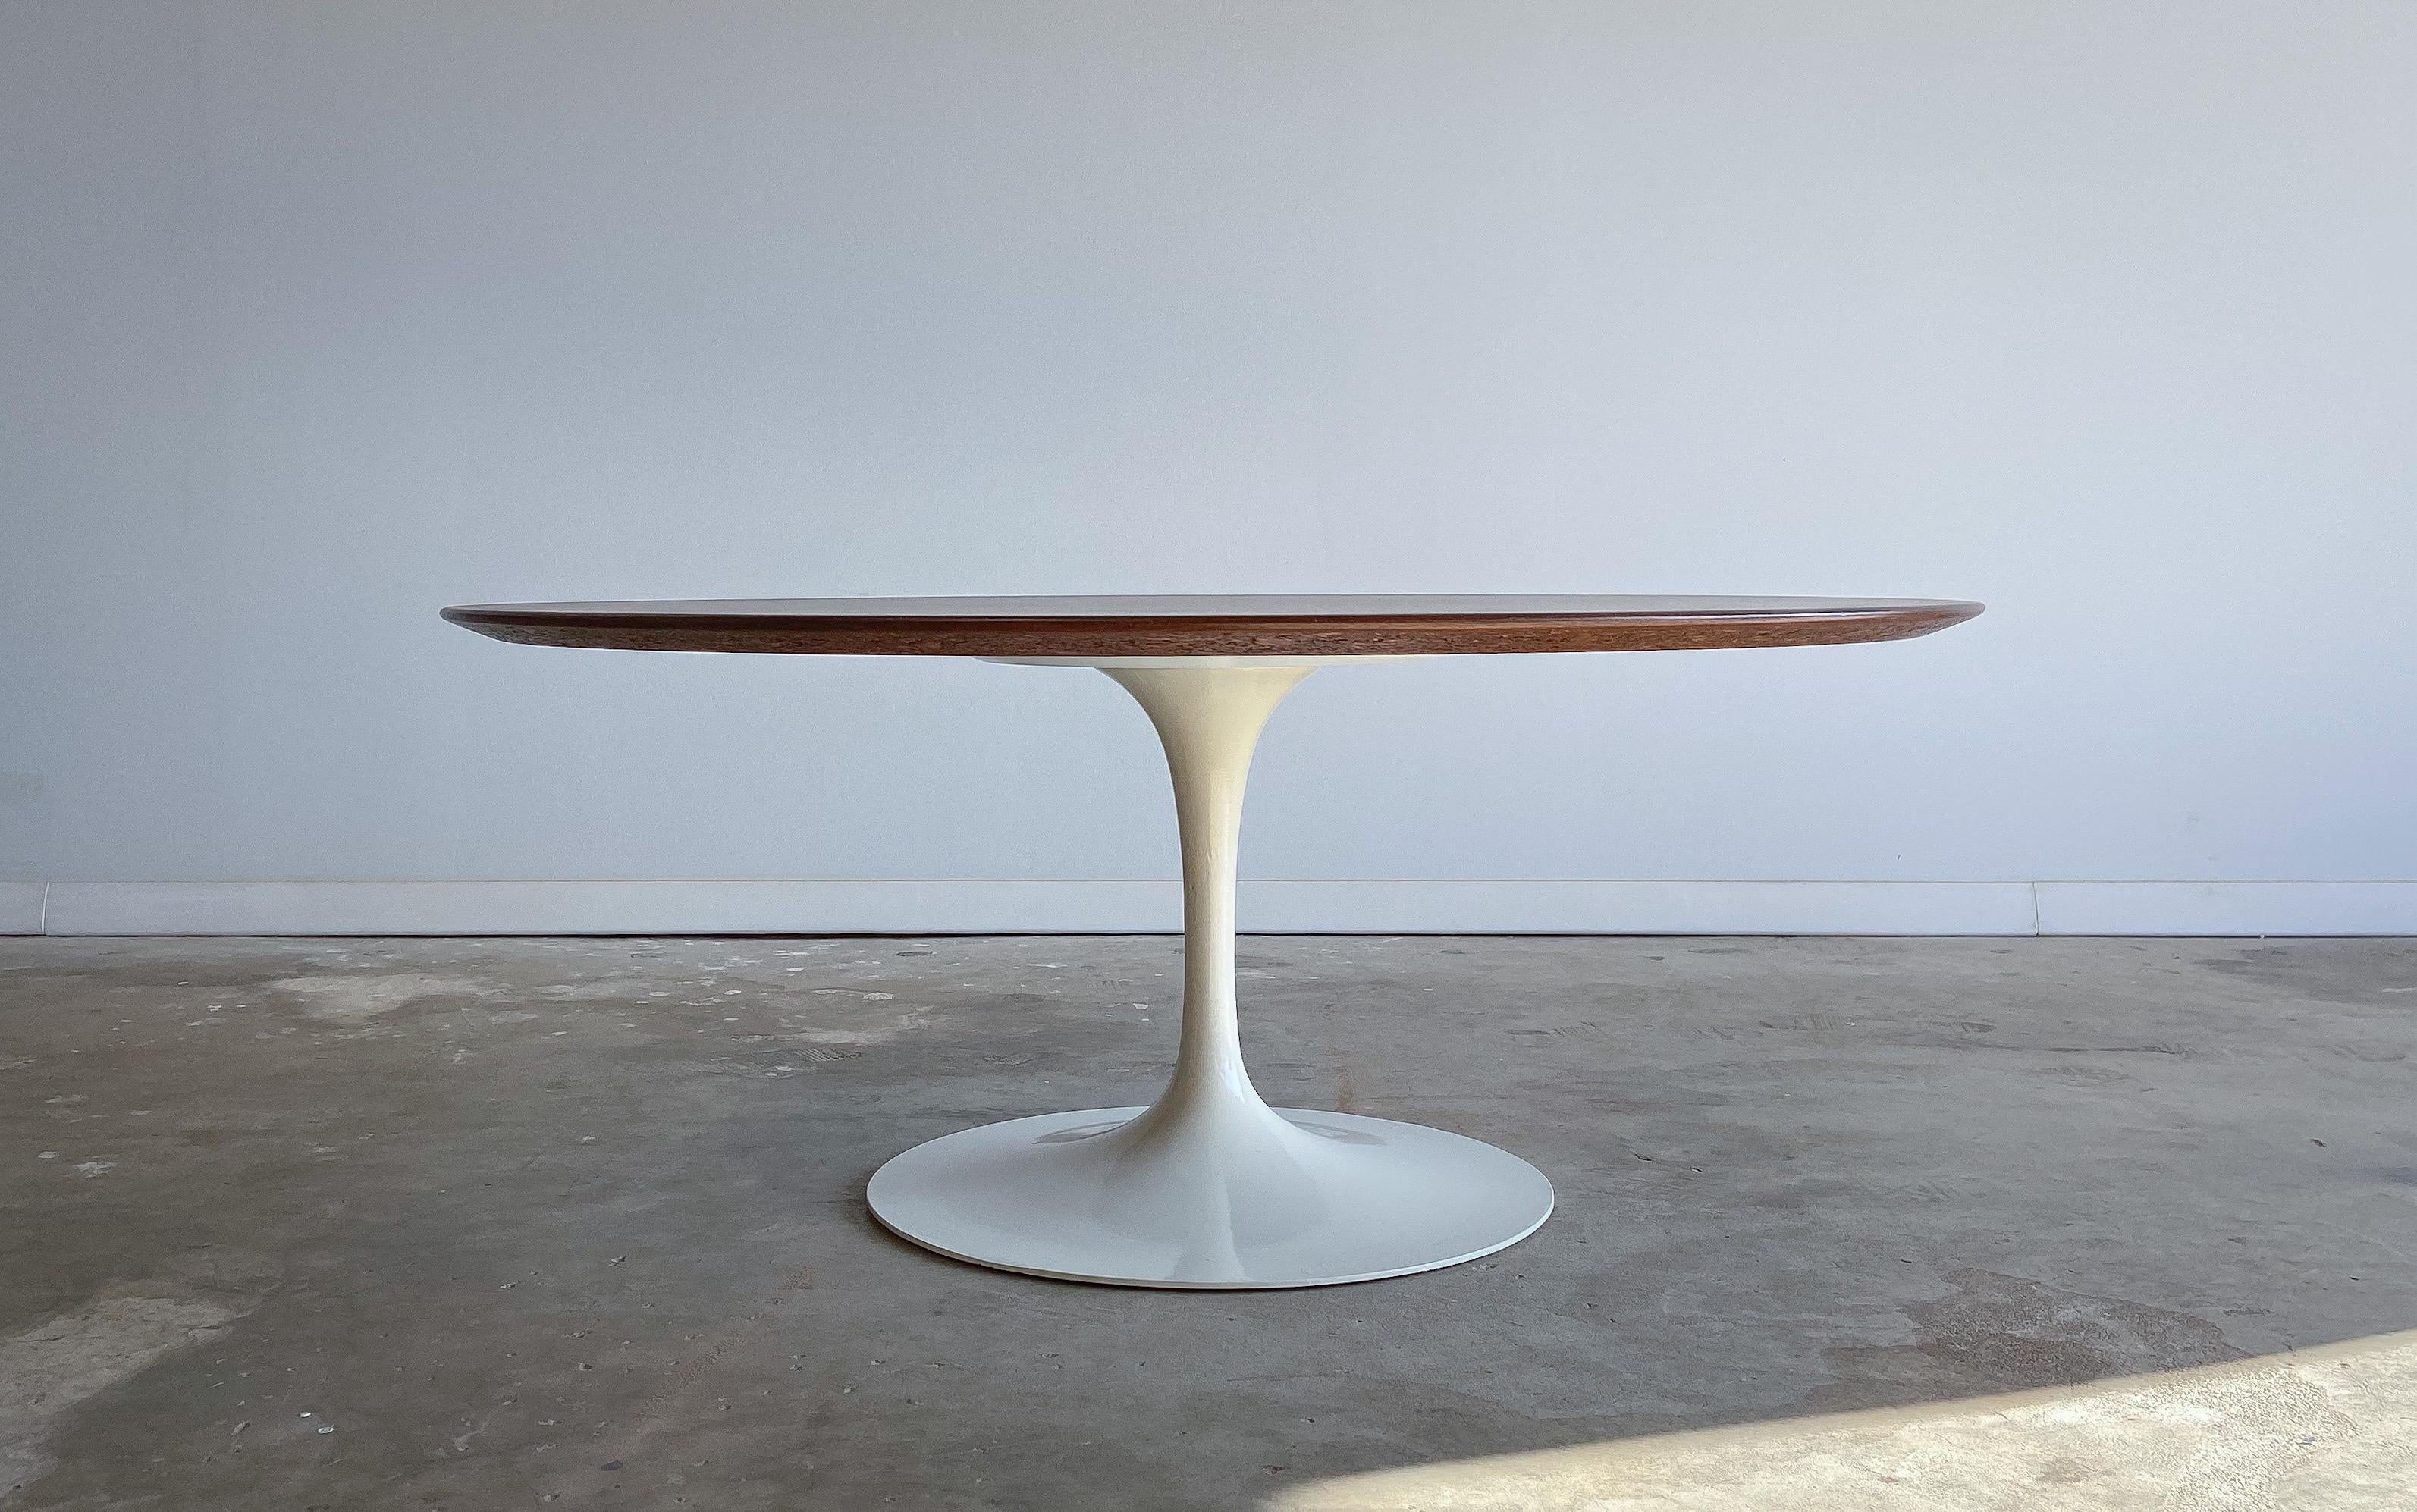 Ein ikonisches Design von einem ikonischen Designer.

Von Eero Saarinen entworfener Couchtisch für Knoll International. Dieser Tisch wurde in den 1970er Jahren hergestellt.

Mit einer schön gemaserten Walnussplatte und einem pulverbeschichteten